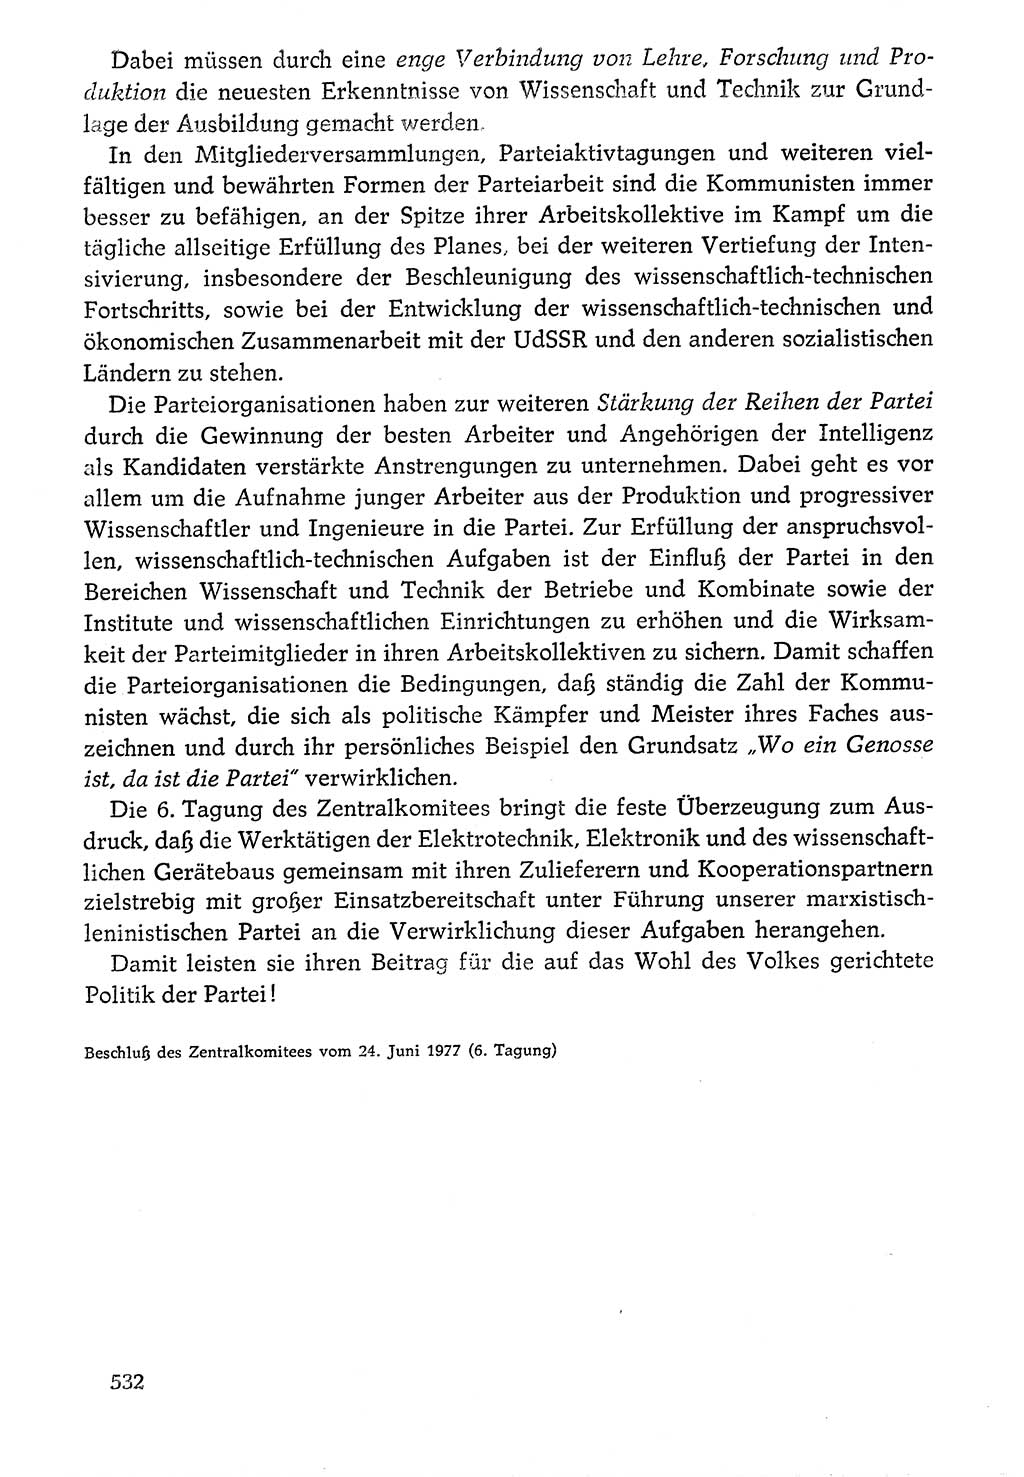 Dokumente der Sozialistischen Einheitspartei Deutschlands (SED) [Deutsche Demokratische Republik (DDR)] 1976-1977, Seite 532 (Dok. SED DDR 1976-1977, S. 532)